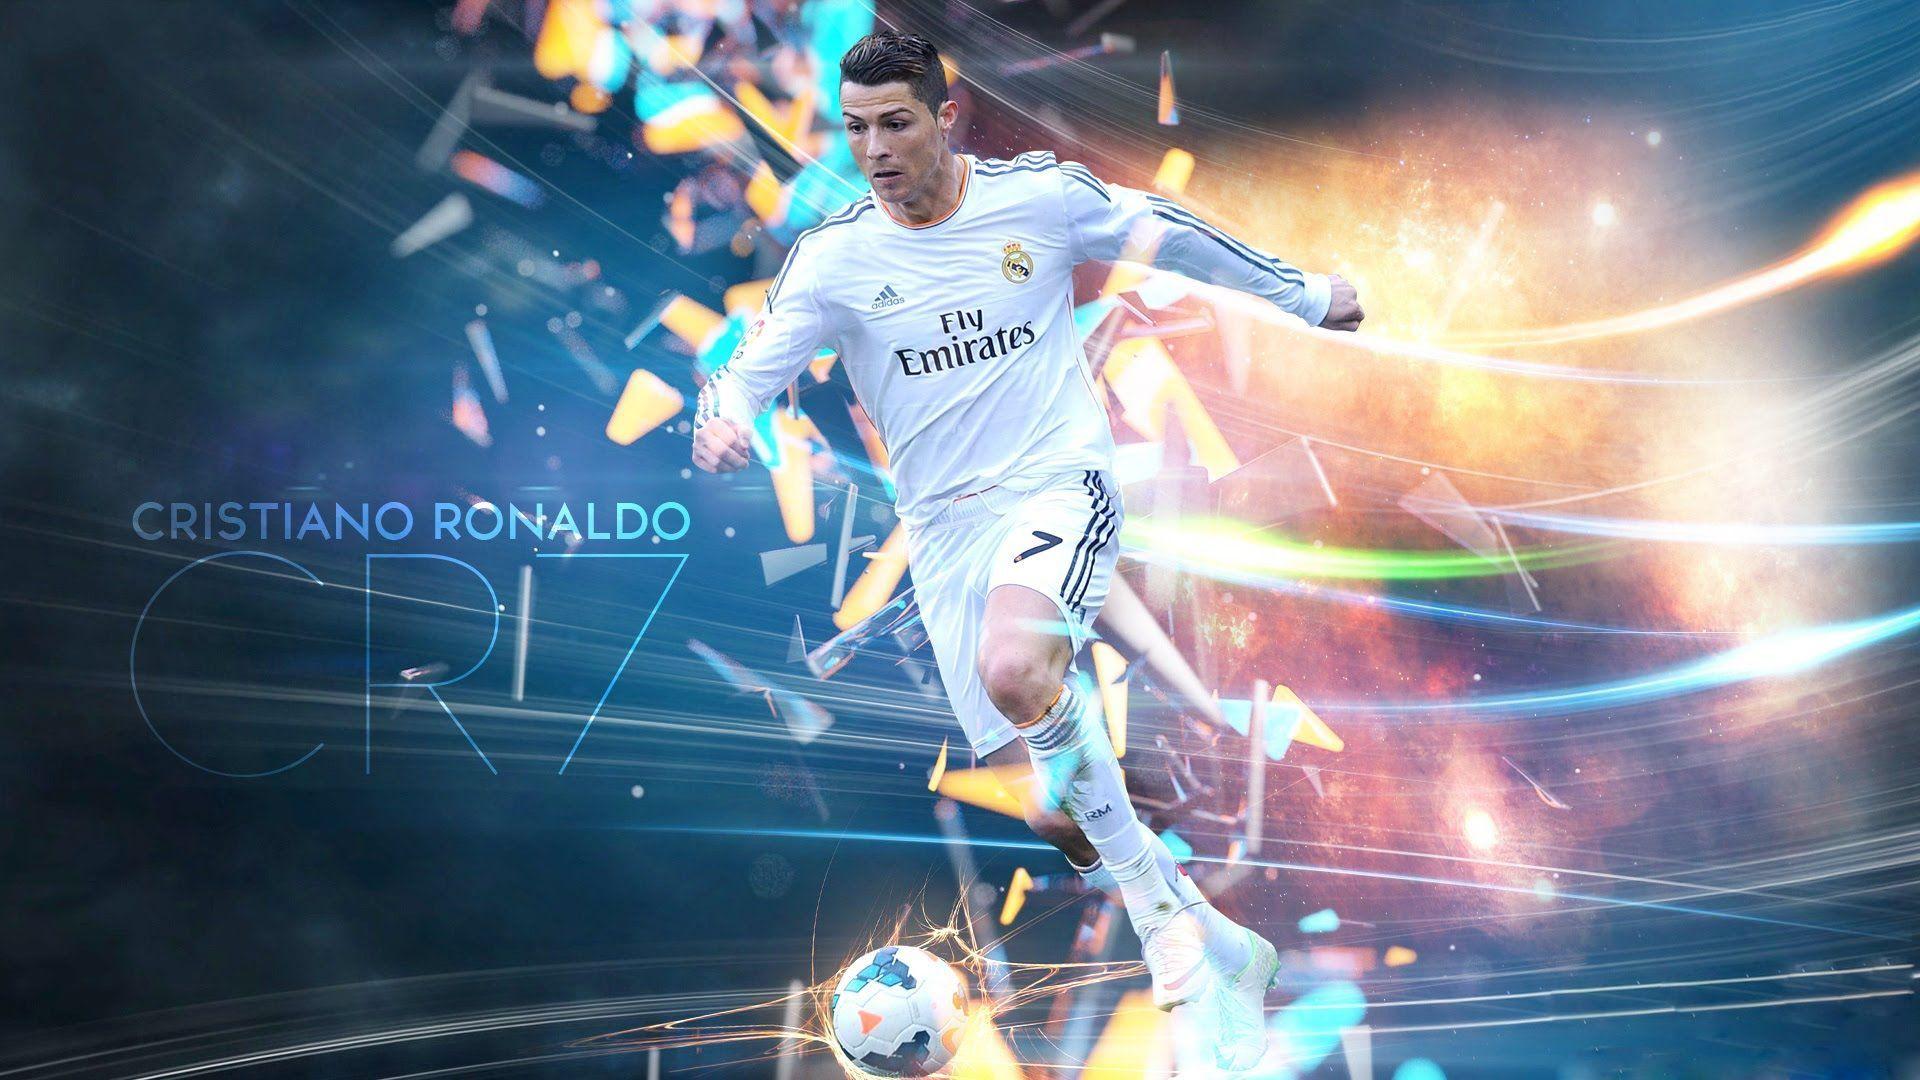 Cristiano Ronaldo Full HD Wallpaper [1920x1080]. Cristiano